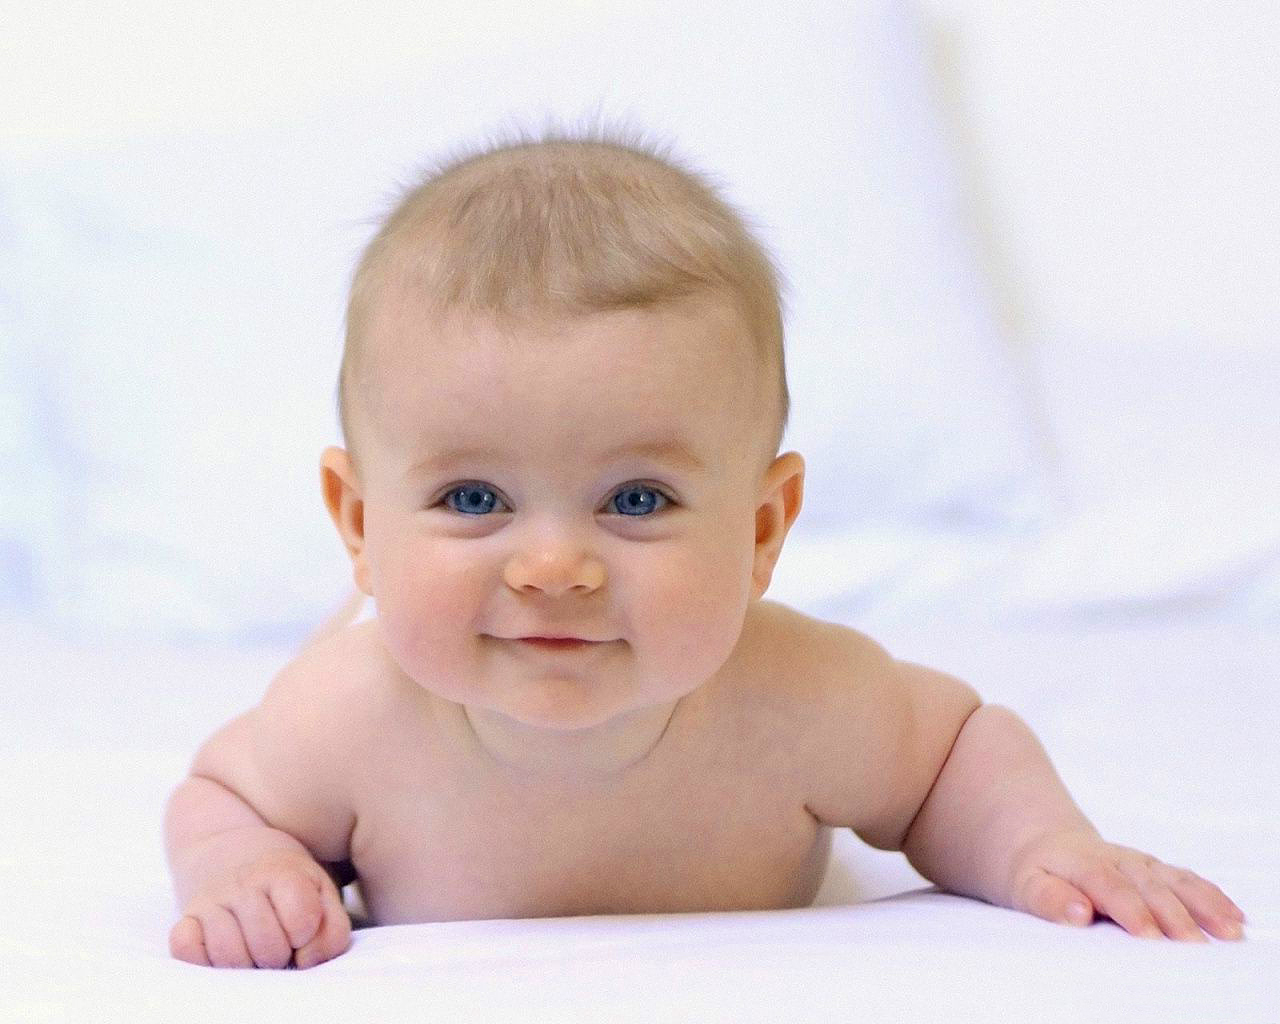 Baby wallpaper met baby op zijn buik die lacht